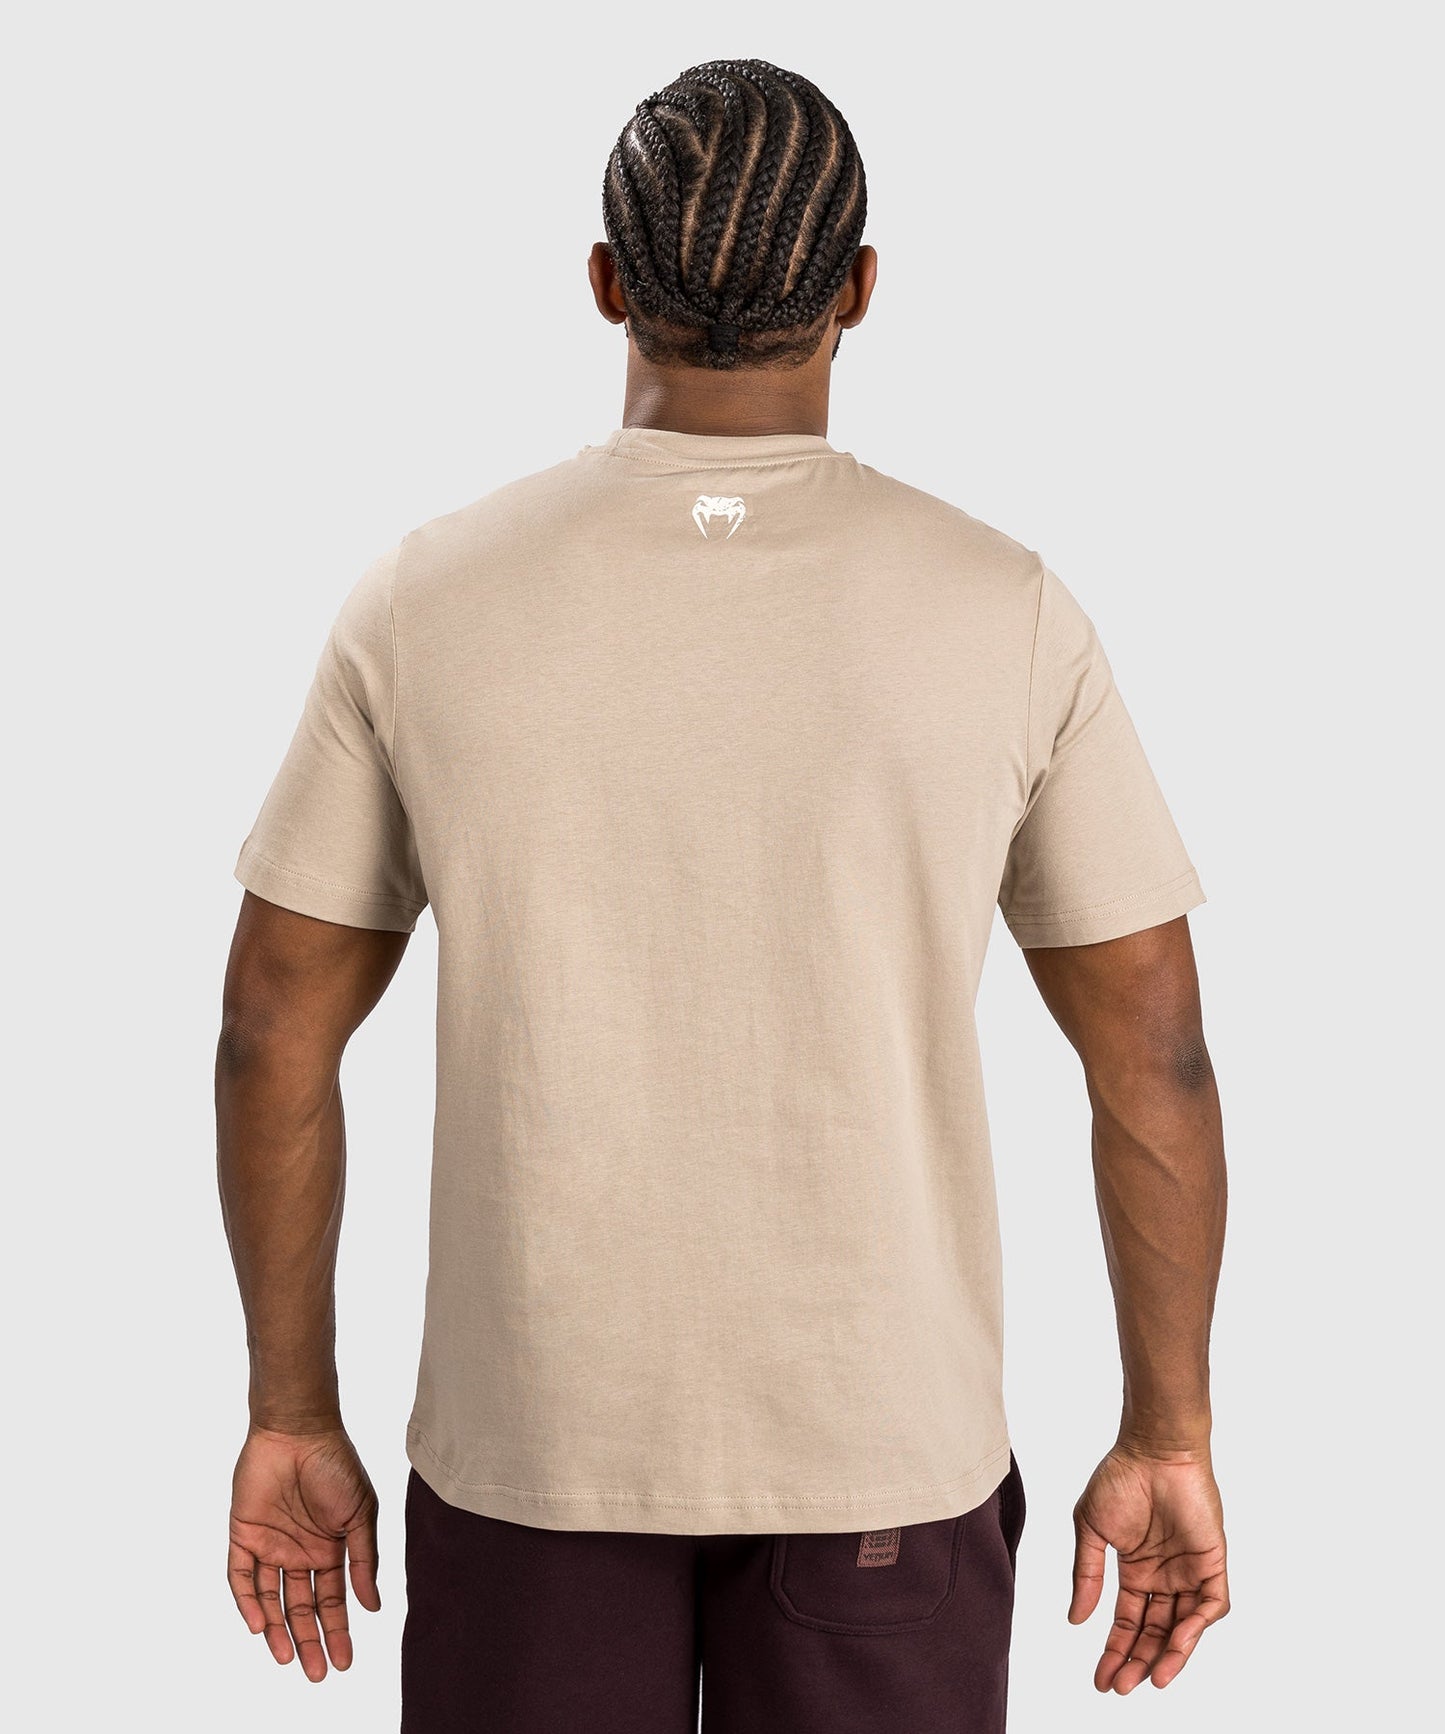 Venum Made in Fightland T-shirt - Zand